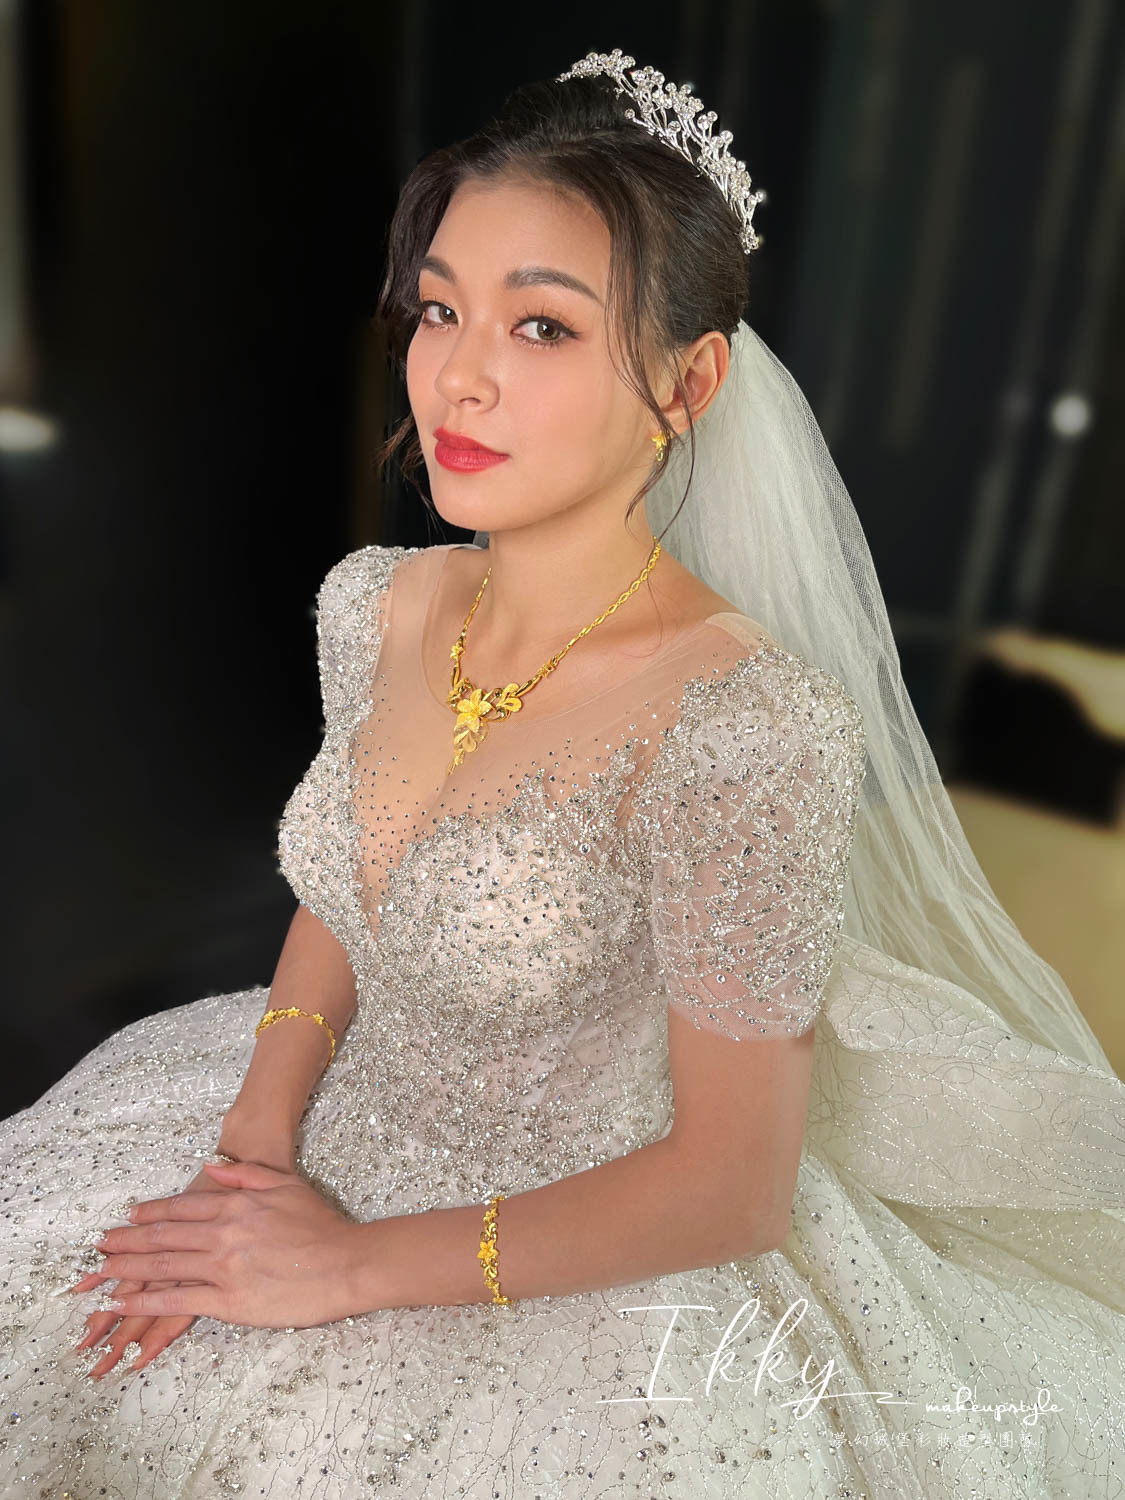 【新秘Ikky】bride彥辰  訂結婚造型 / 旗袍女伶,知性優雅